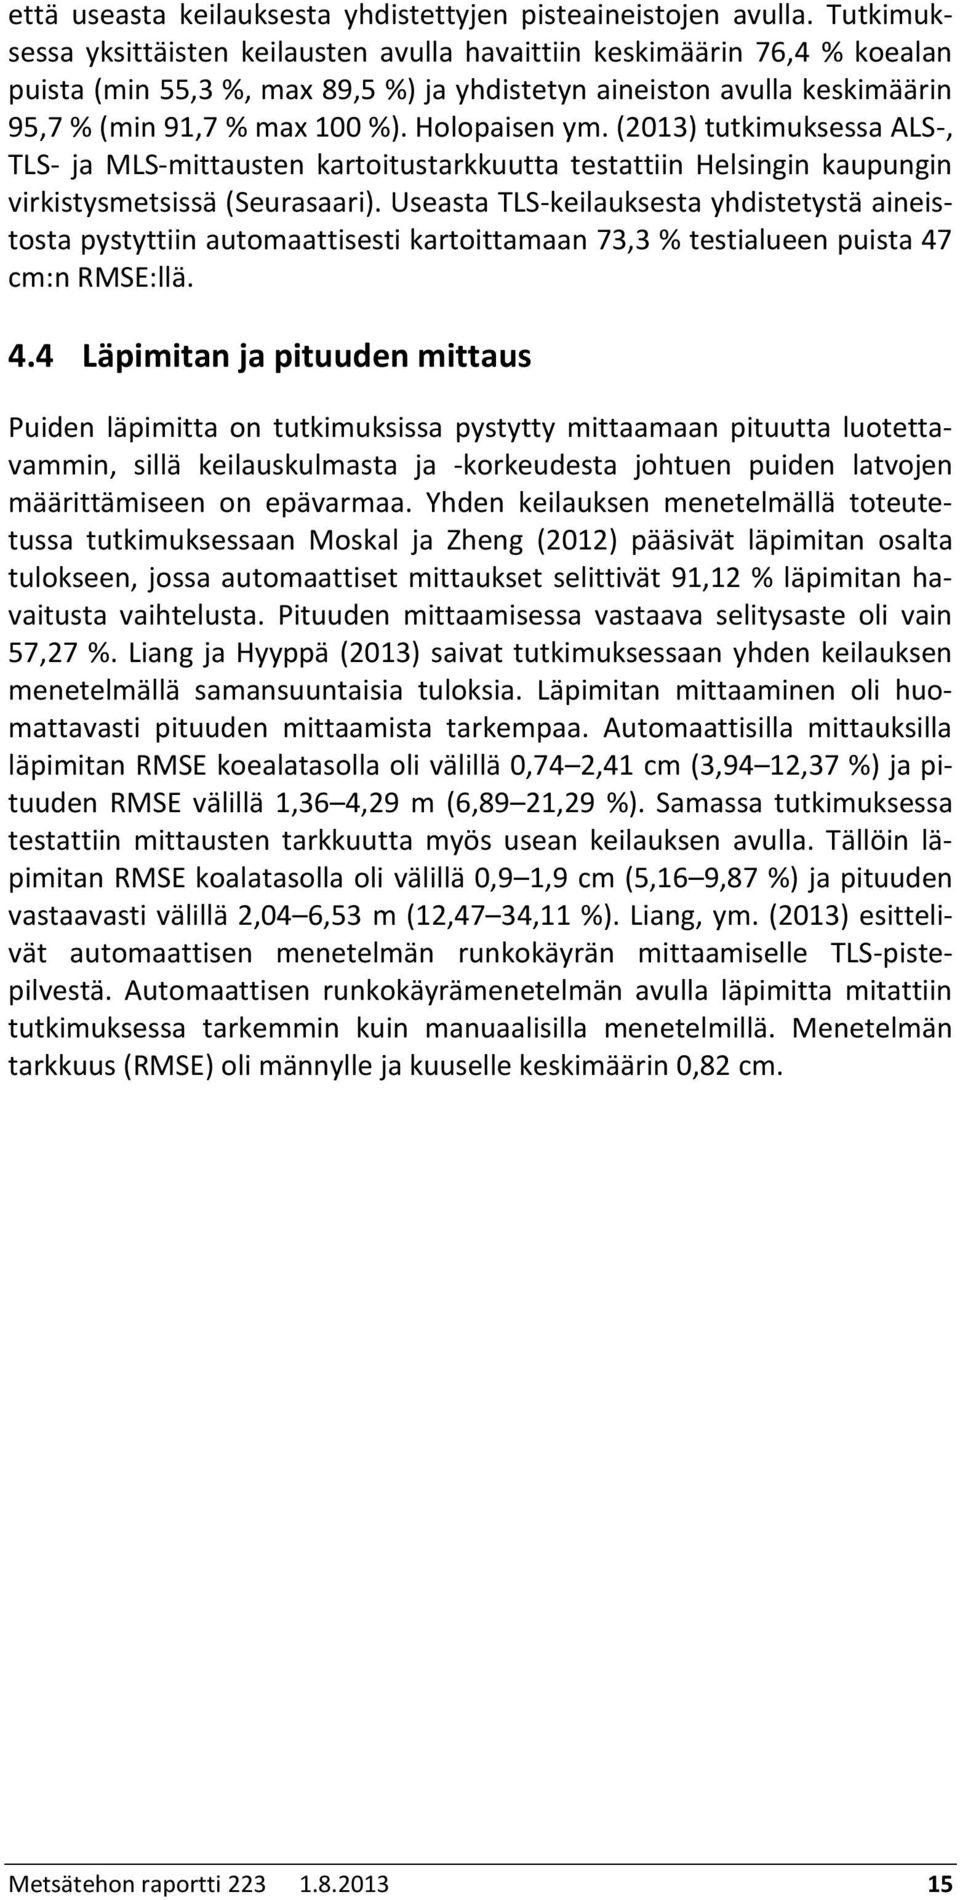 Holopaisen ym. (2013) tutkimuksessa ALS-, TLS- ja MLS-mittausten kartoitustarkkuutta testattiin Helsingin kaupungin virkistysmetsissä (Seurasaari).